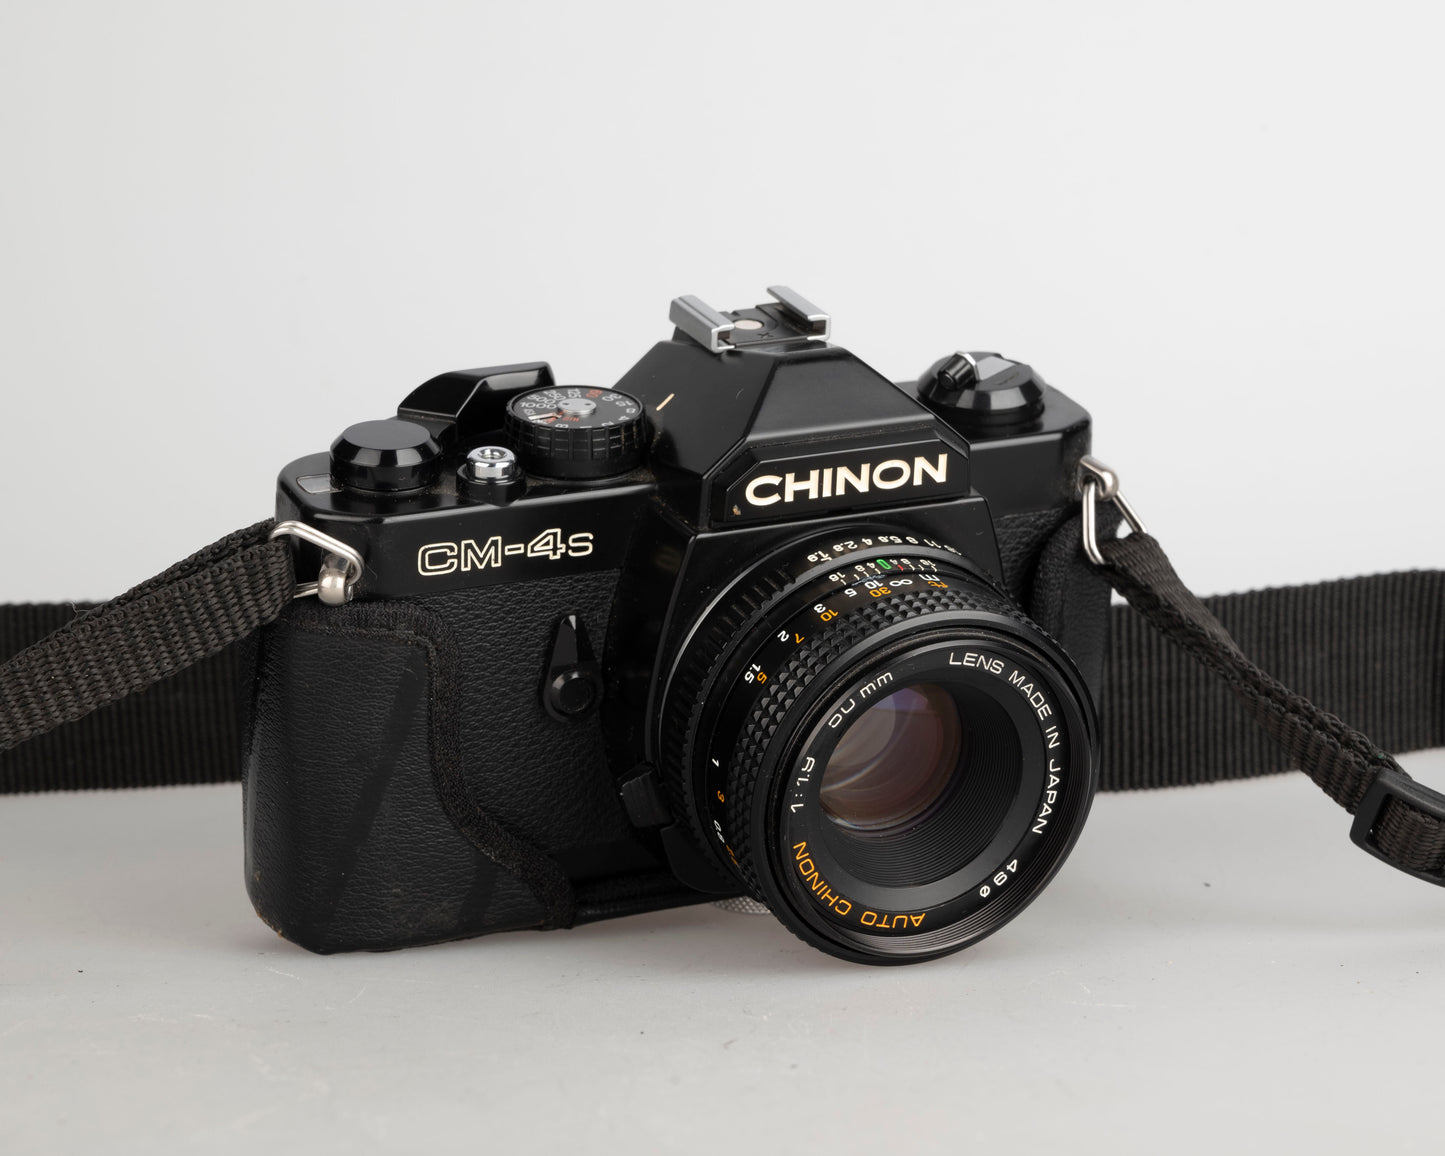 Appareil photo reflex Chinon CM-4s 35 mm avec objectif 50 mm f1.9 + étui toujours prêt (série 359792)